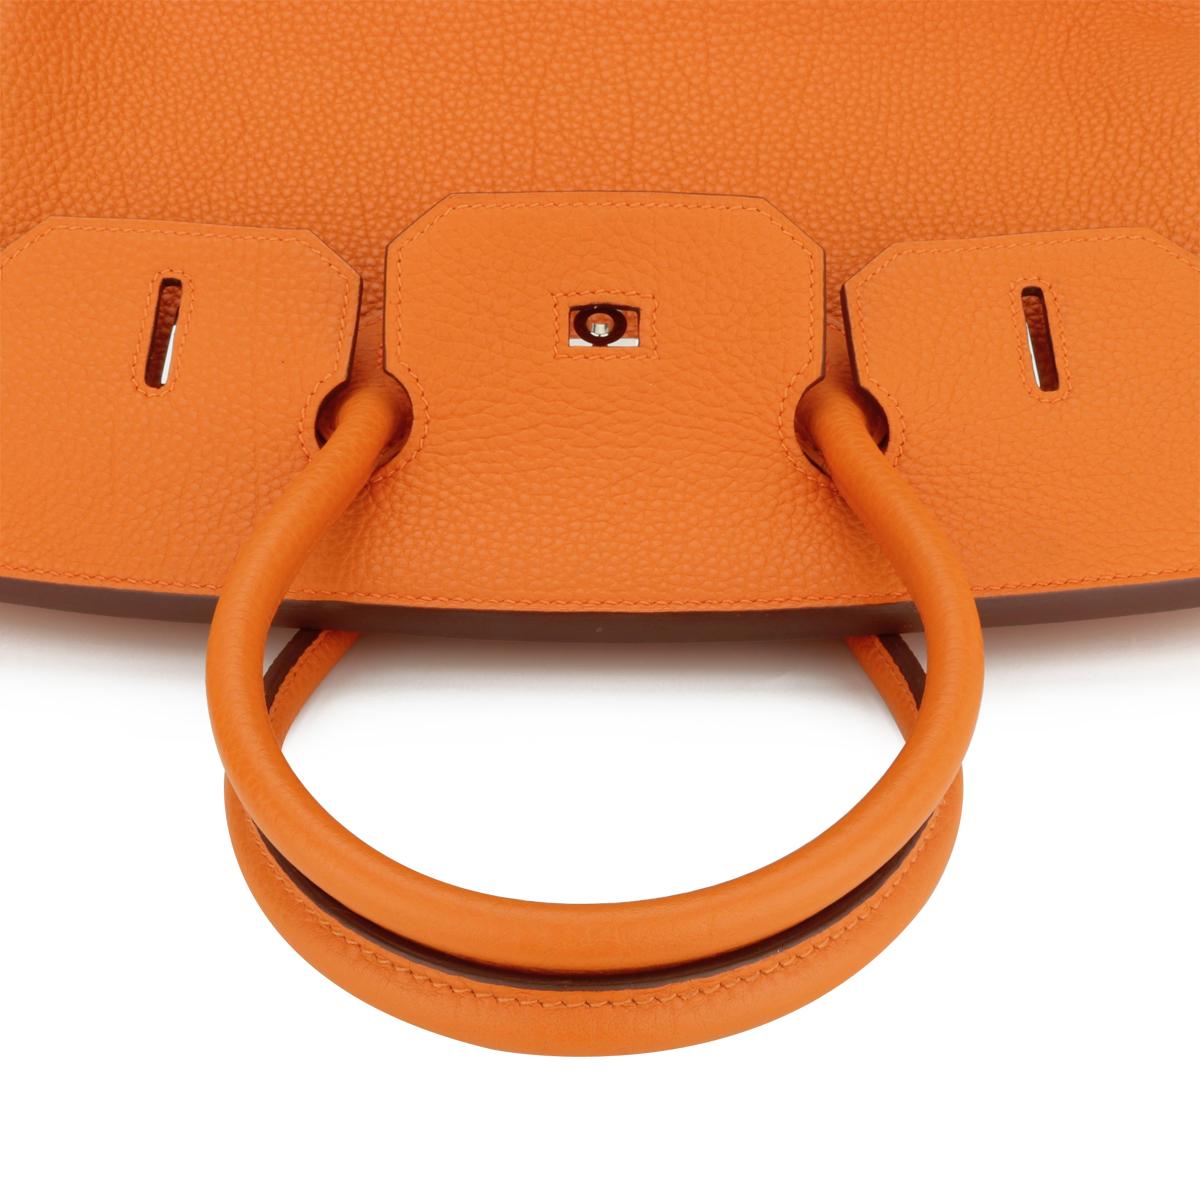 Hermès Birkin Bag 35cm Orange Togo Leather with Palladium Hardware Stamp N 2010 7